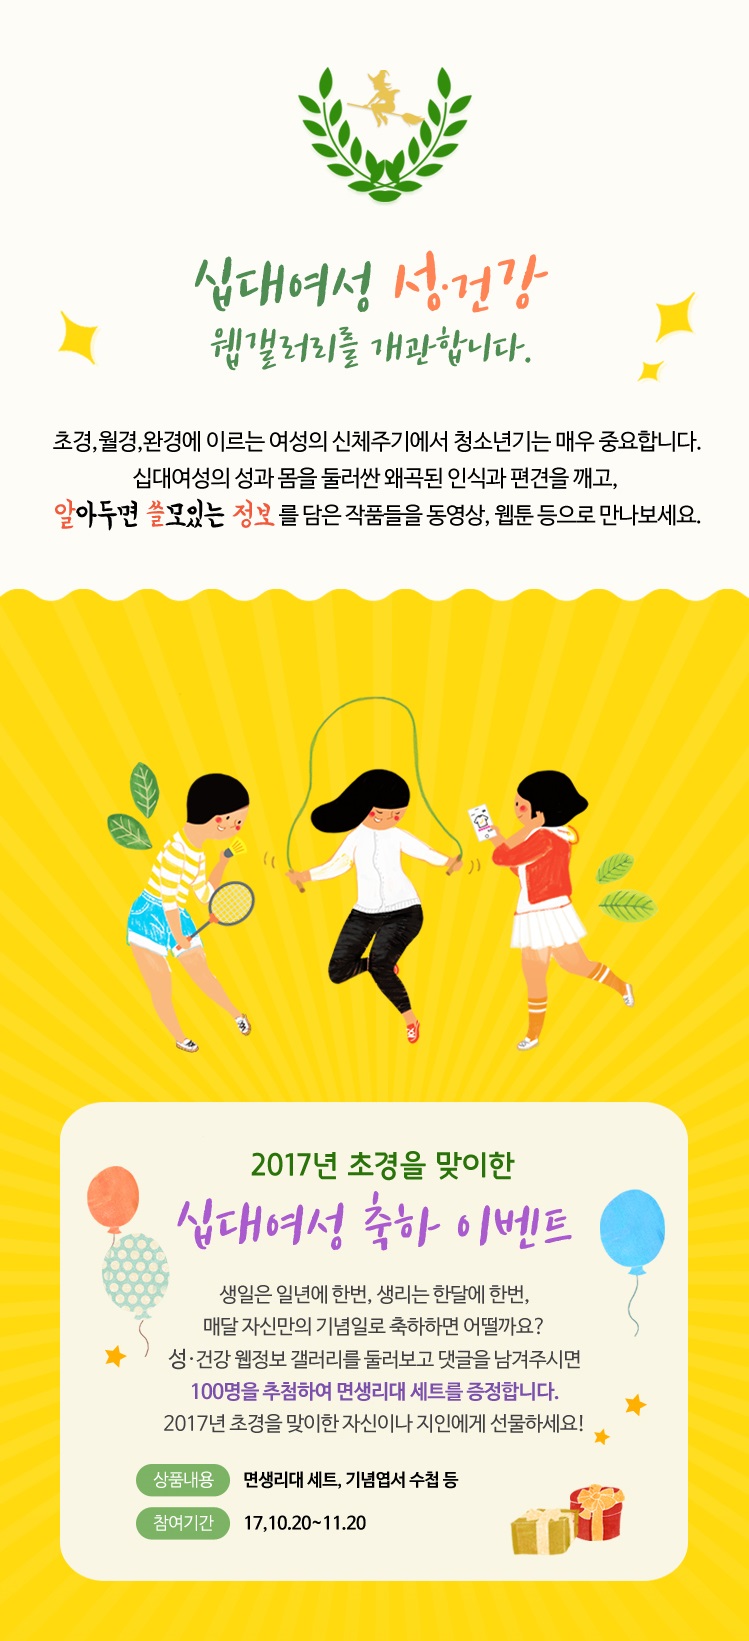 [서울시] 십대여성 성·건강 웹갤러리 개관 이벤트